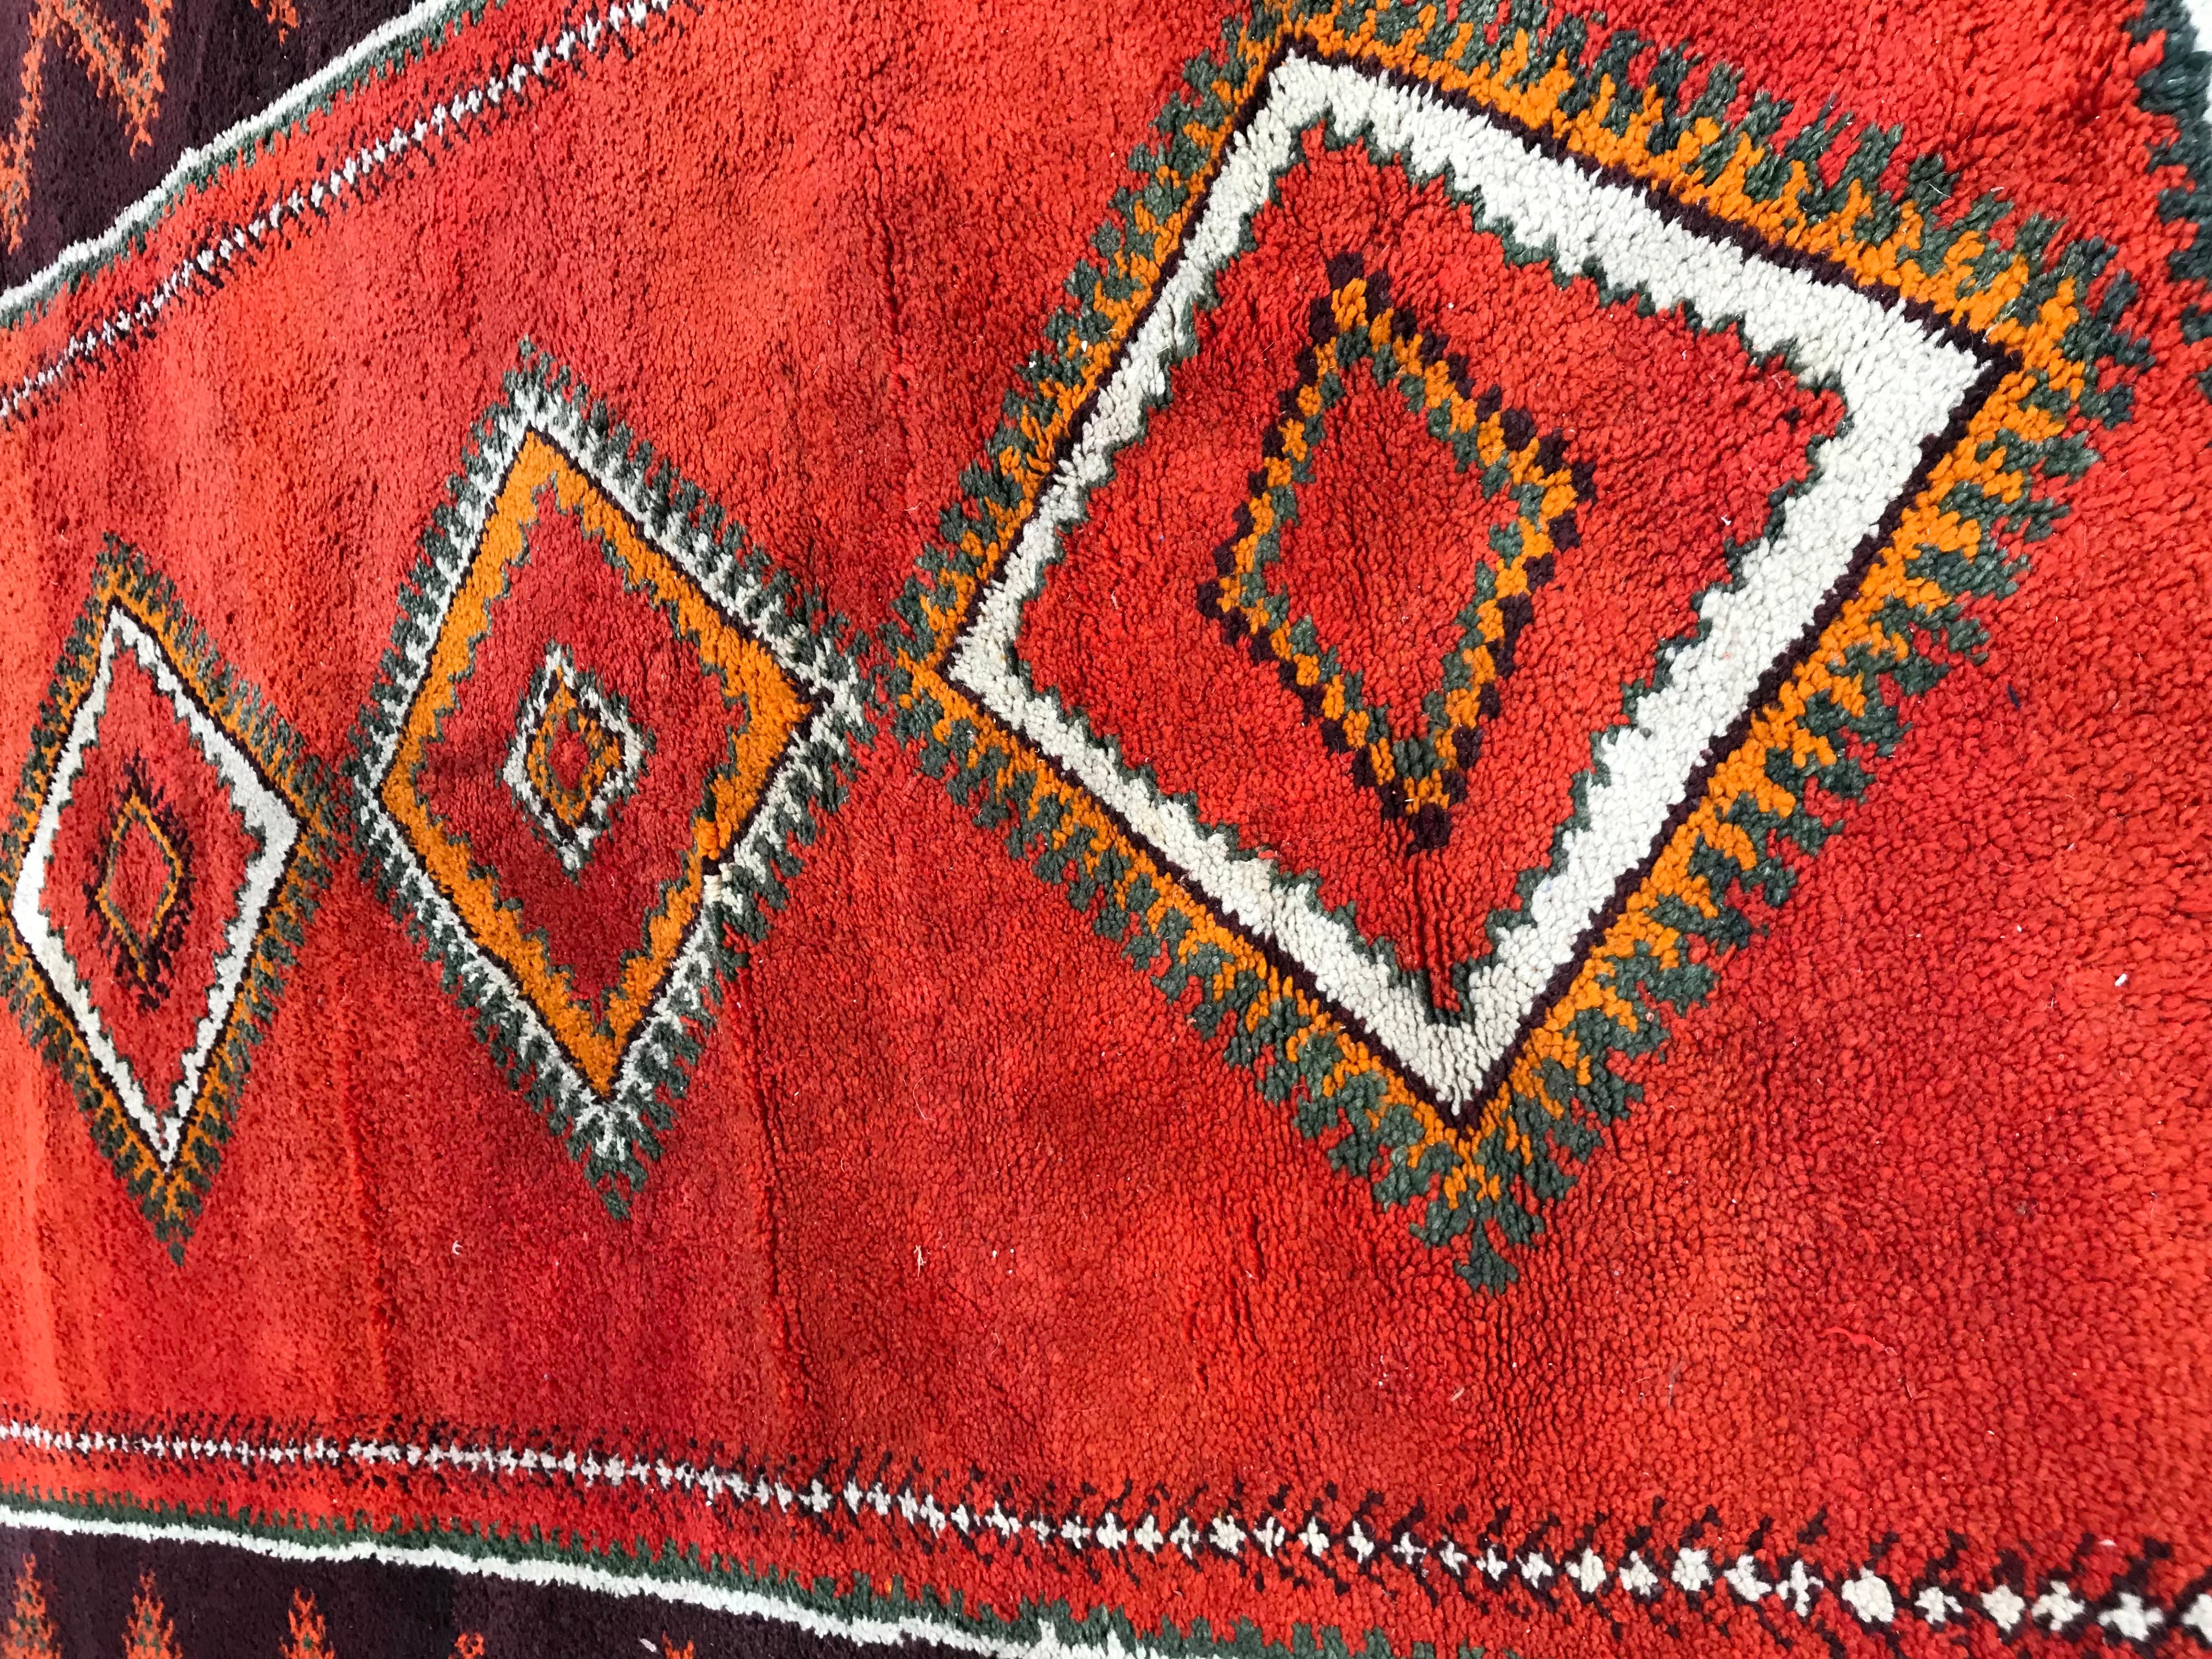 Très beau et original chemin de table marocain vintage avec une belle couleur rouge et un design tribal géométrique, première moitié du 20ème siècle, entièrement noué à la main avec du velours de laine sur une base de laine.
 

✨✨✨
